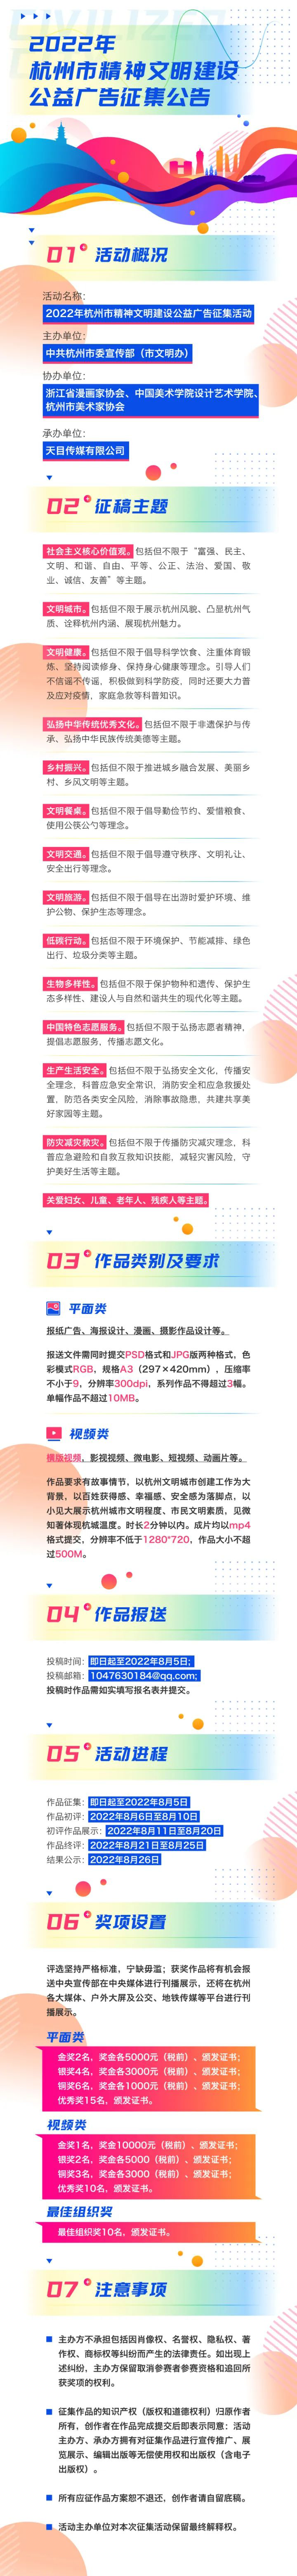 2022年杭州市精神文明建设公益广告征集